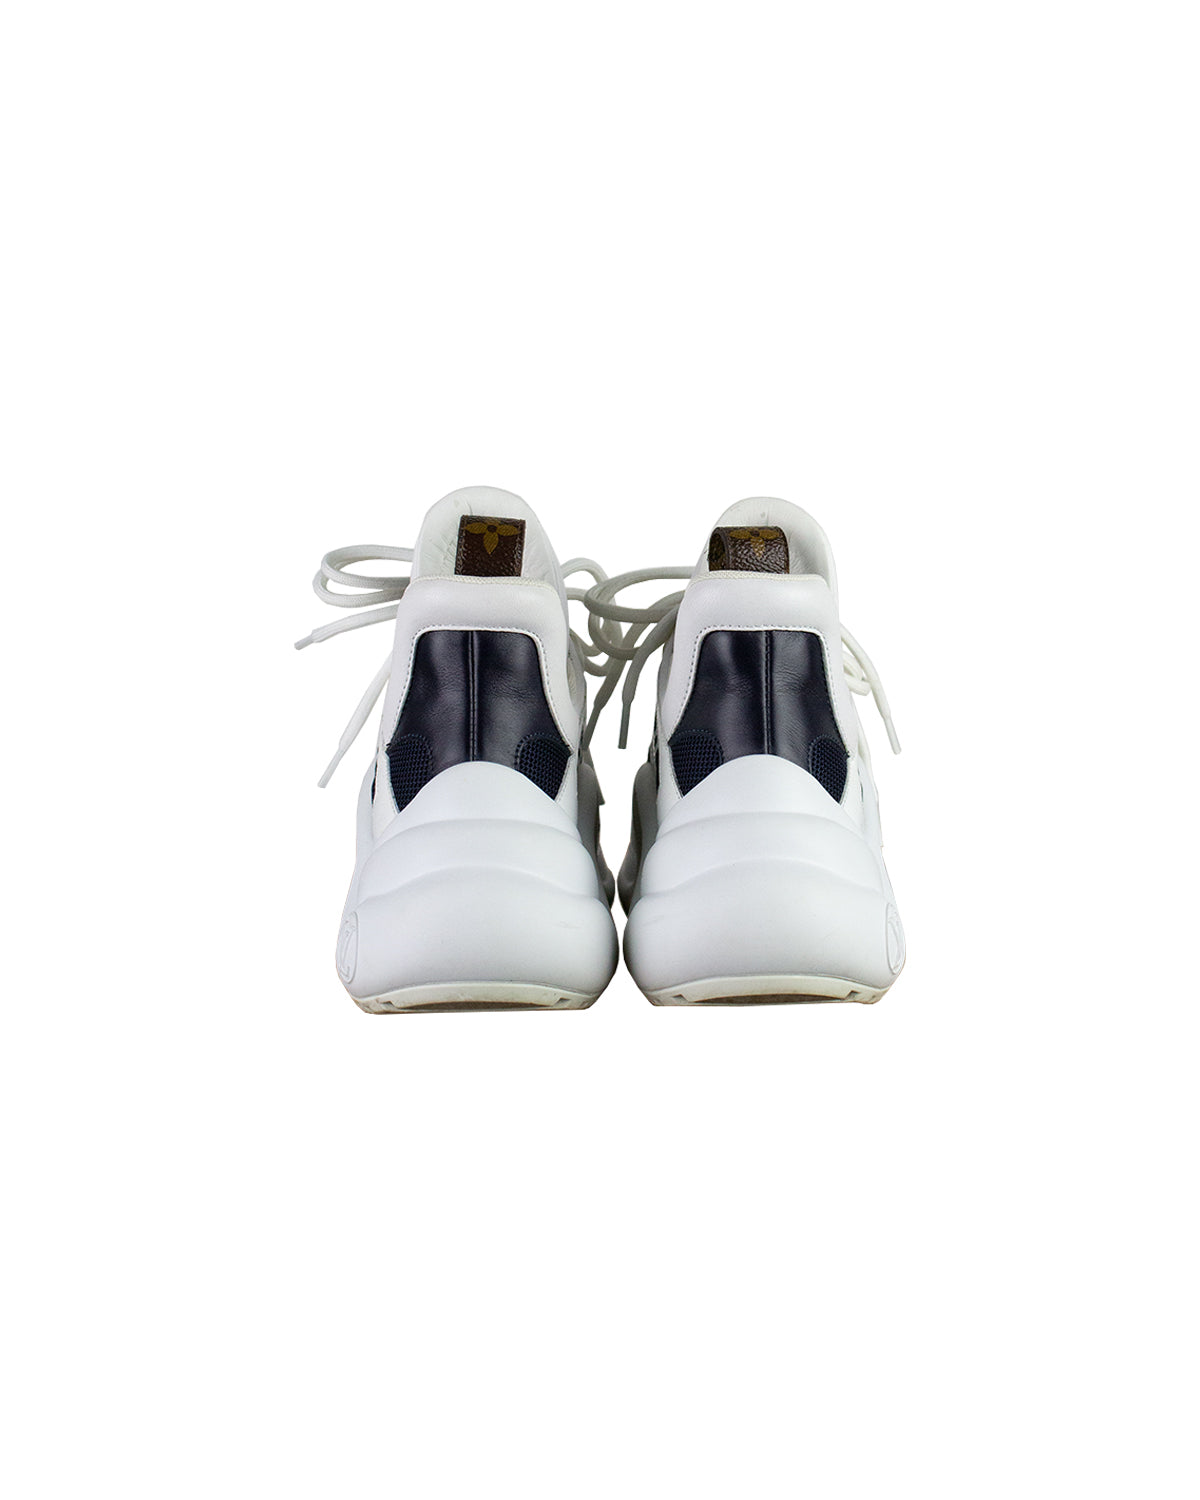 Louis Vuitton, Shoes, Louis Vuitton Archlight Trainers Sneakers Silver Sz  35